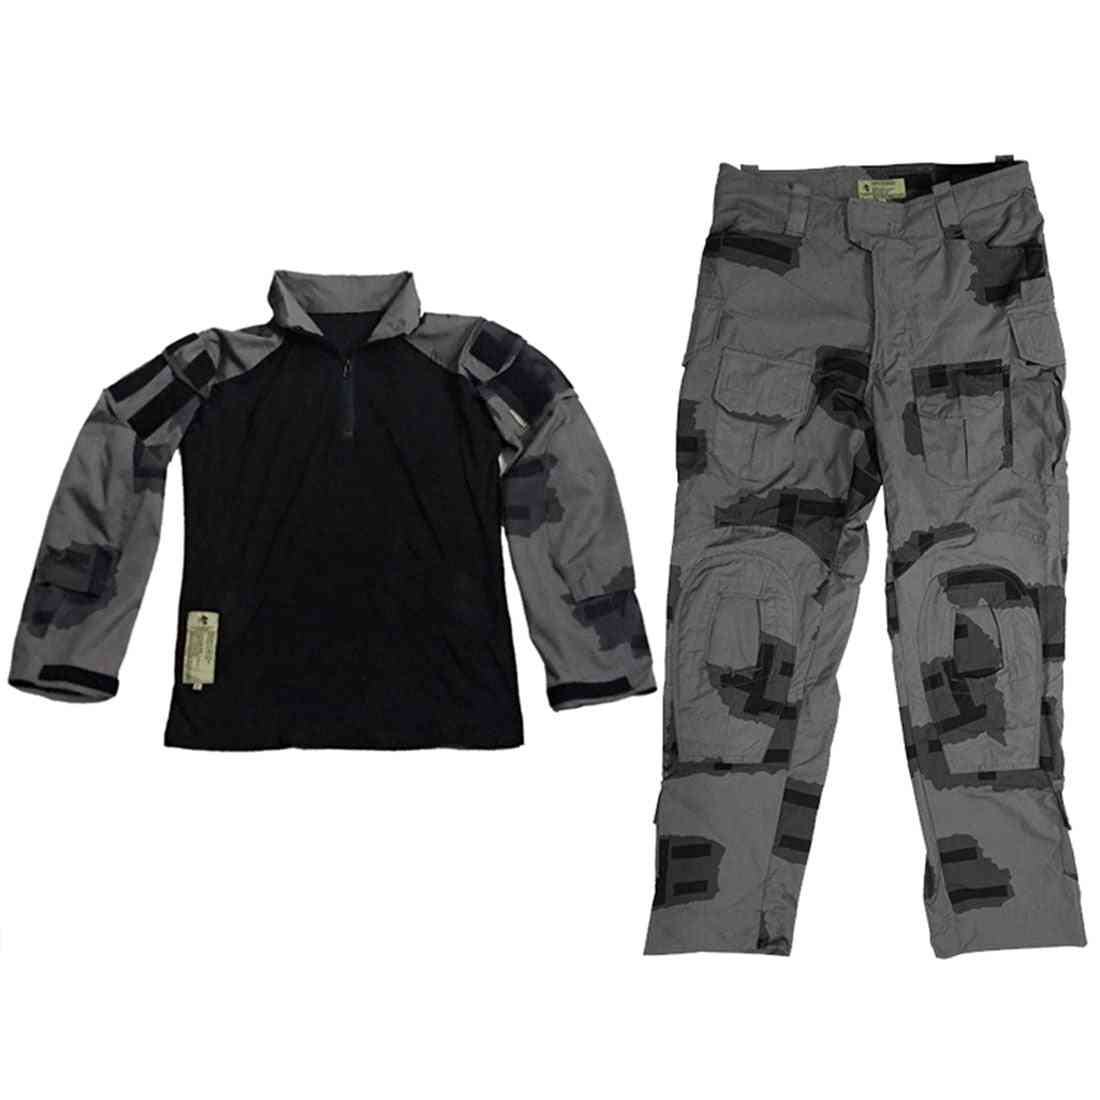 Gunpowder/bg T-block Outdoor Tactical Full Set, Combat Clothes